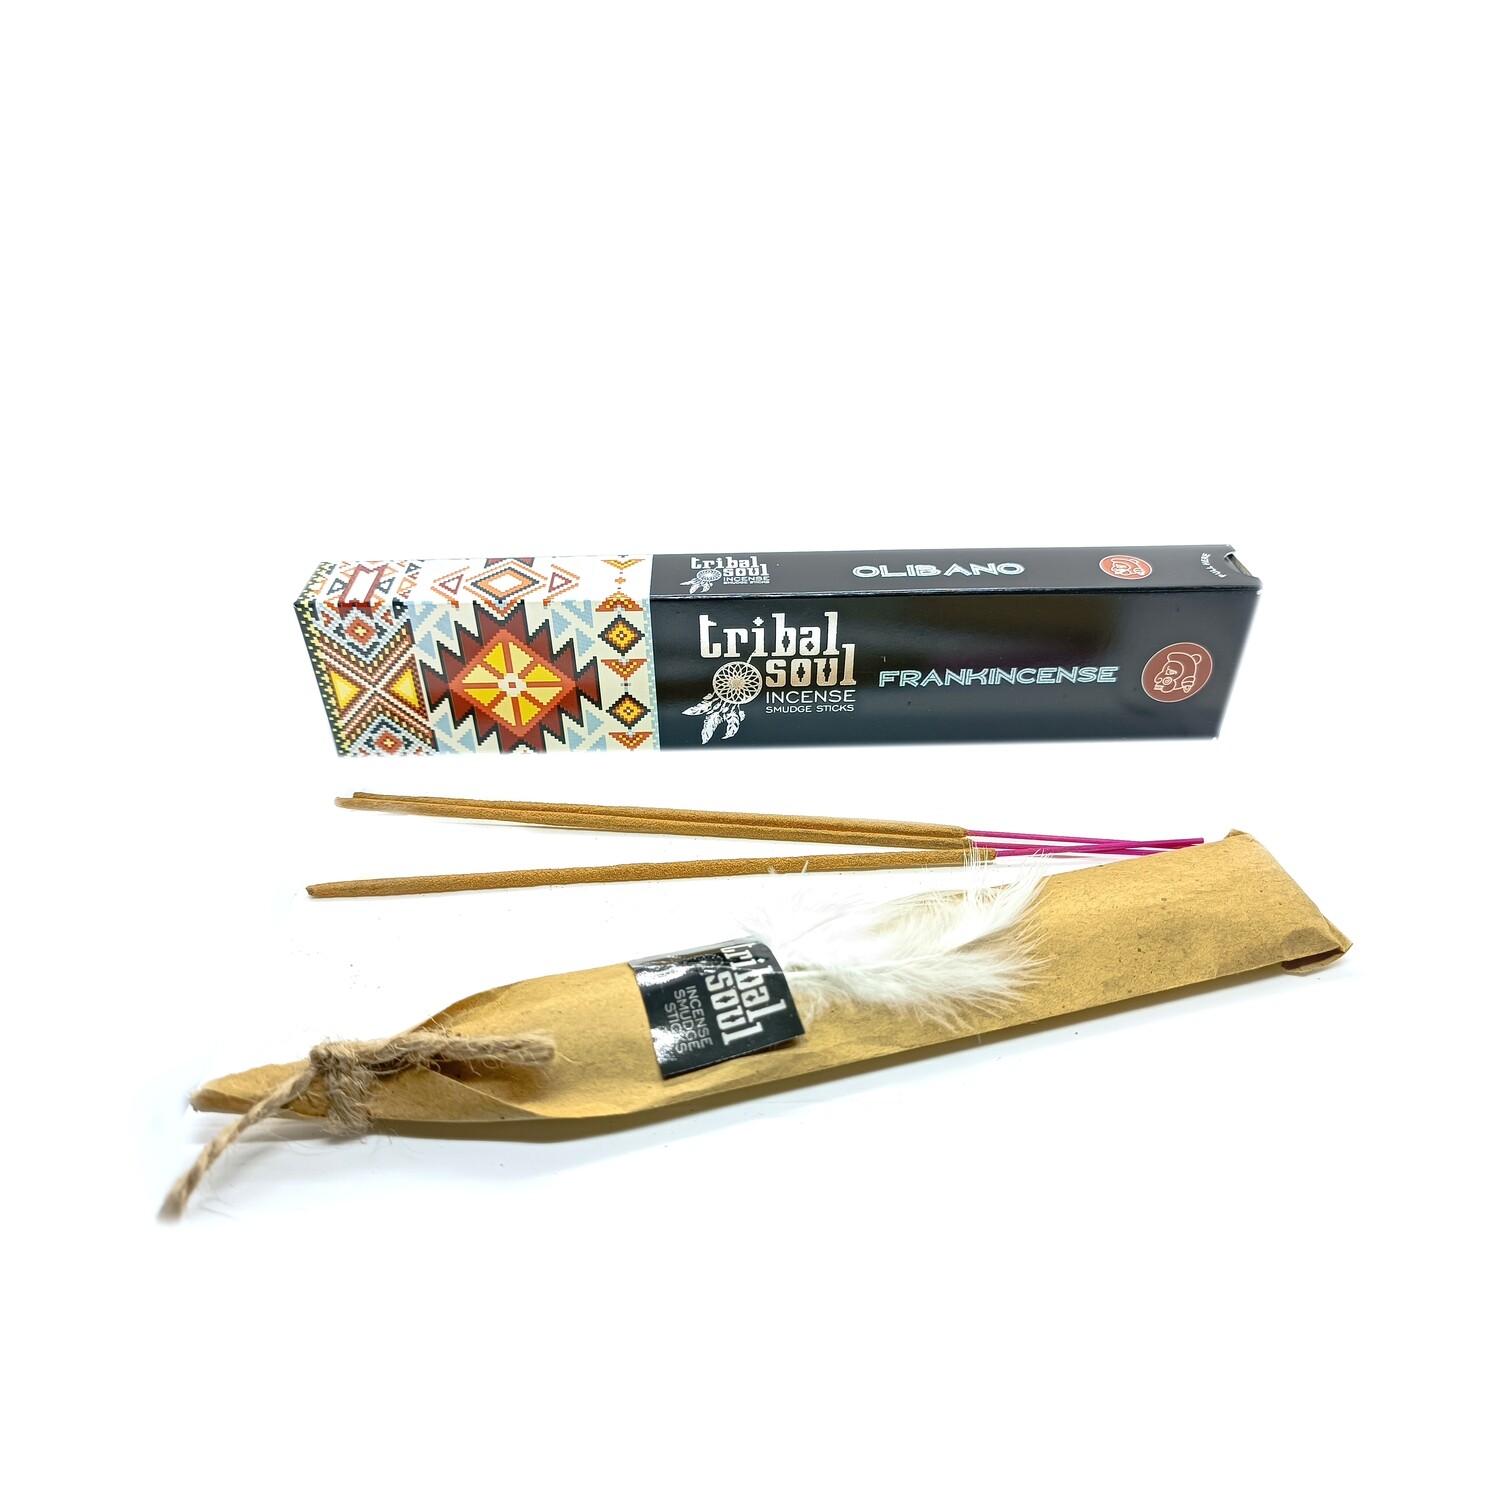 Frankincense - Tribal Soul Incense Smudge Sticks